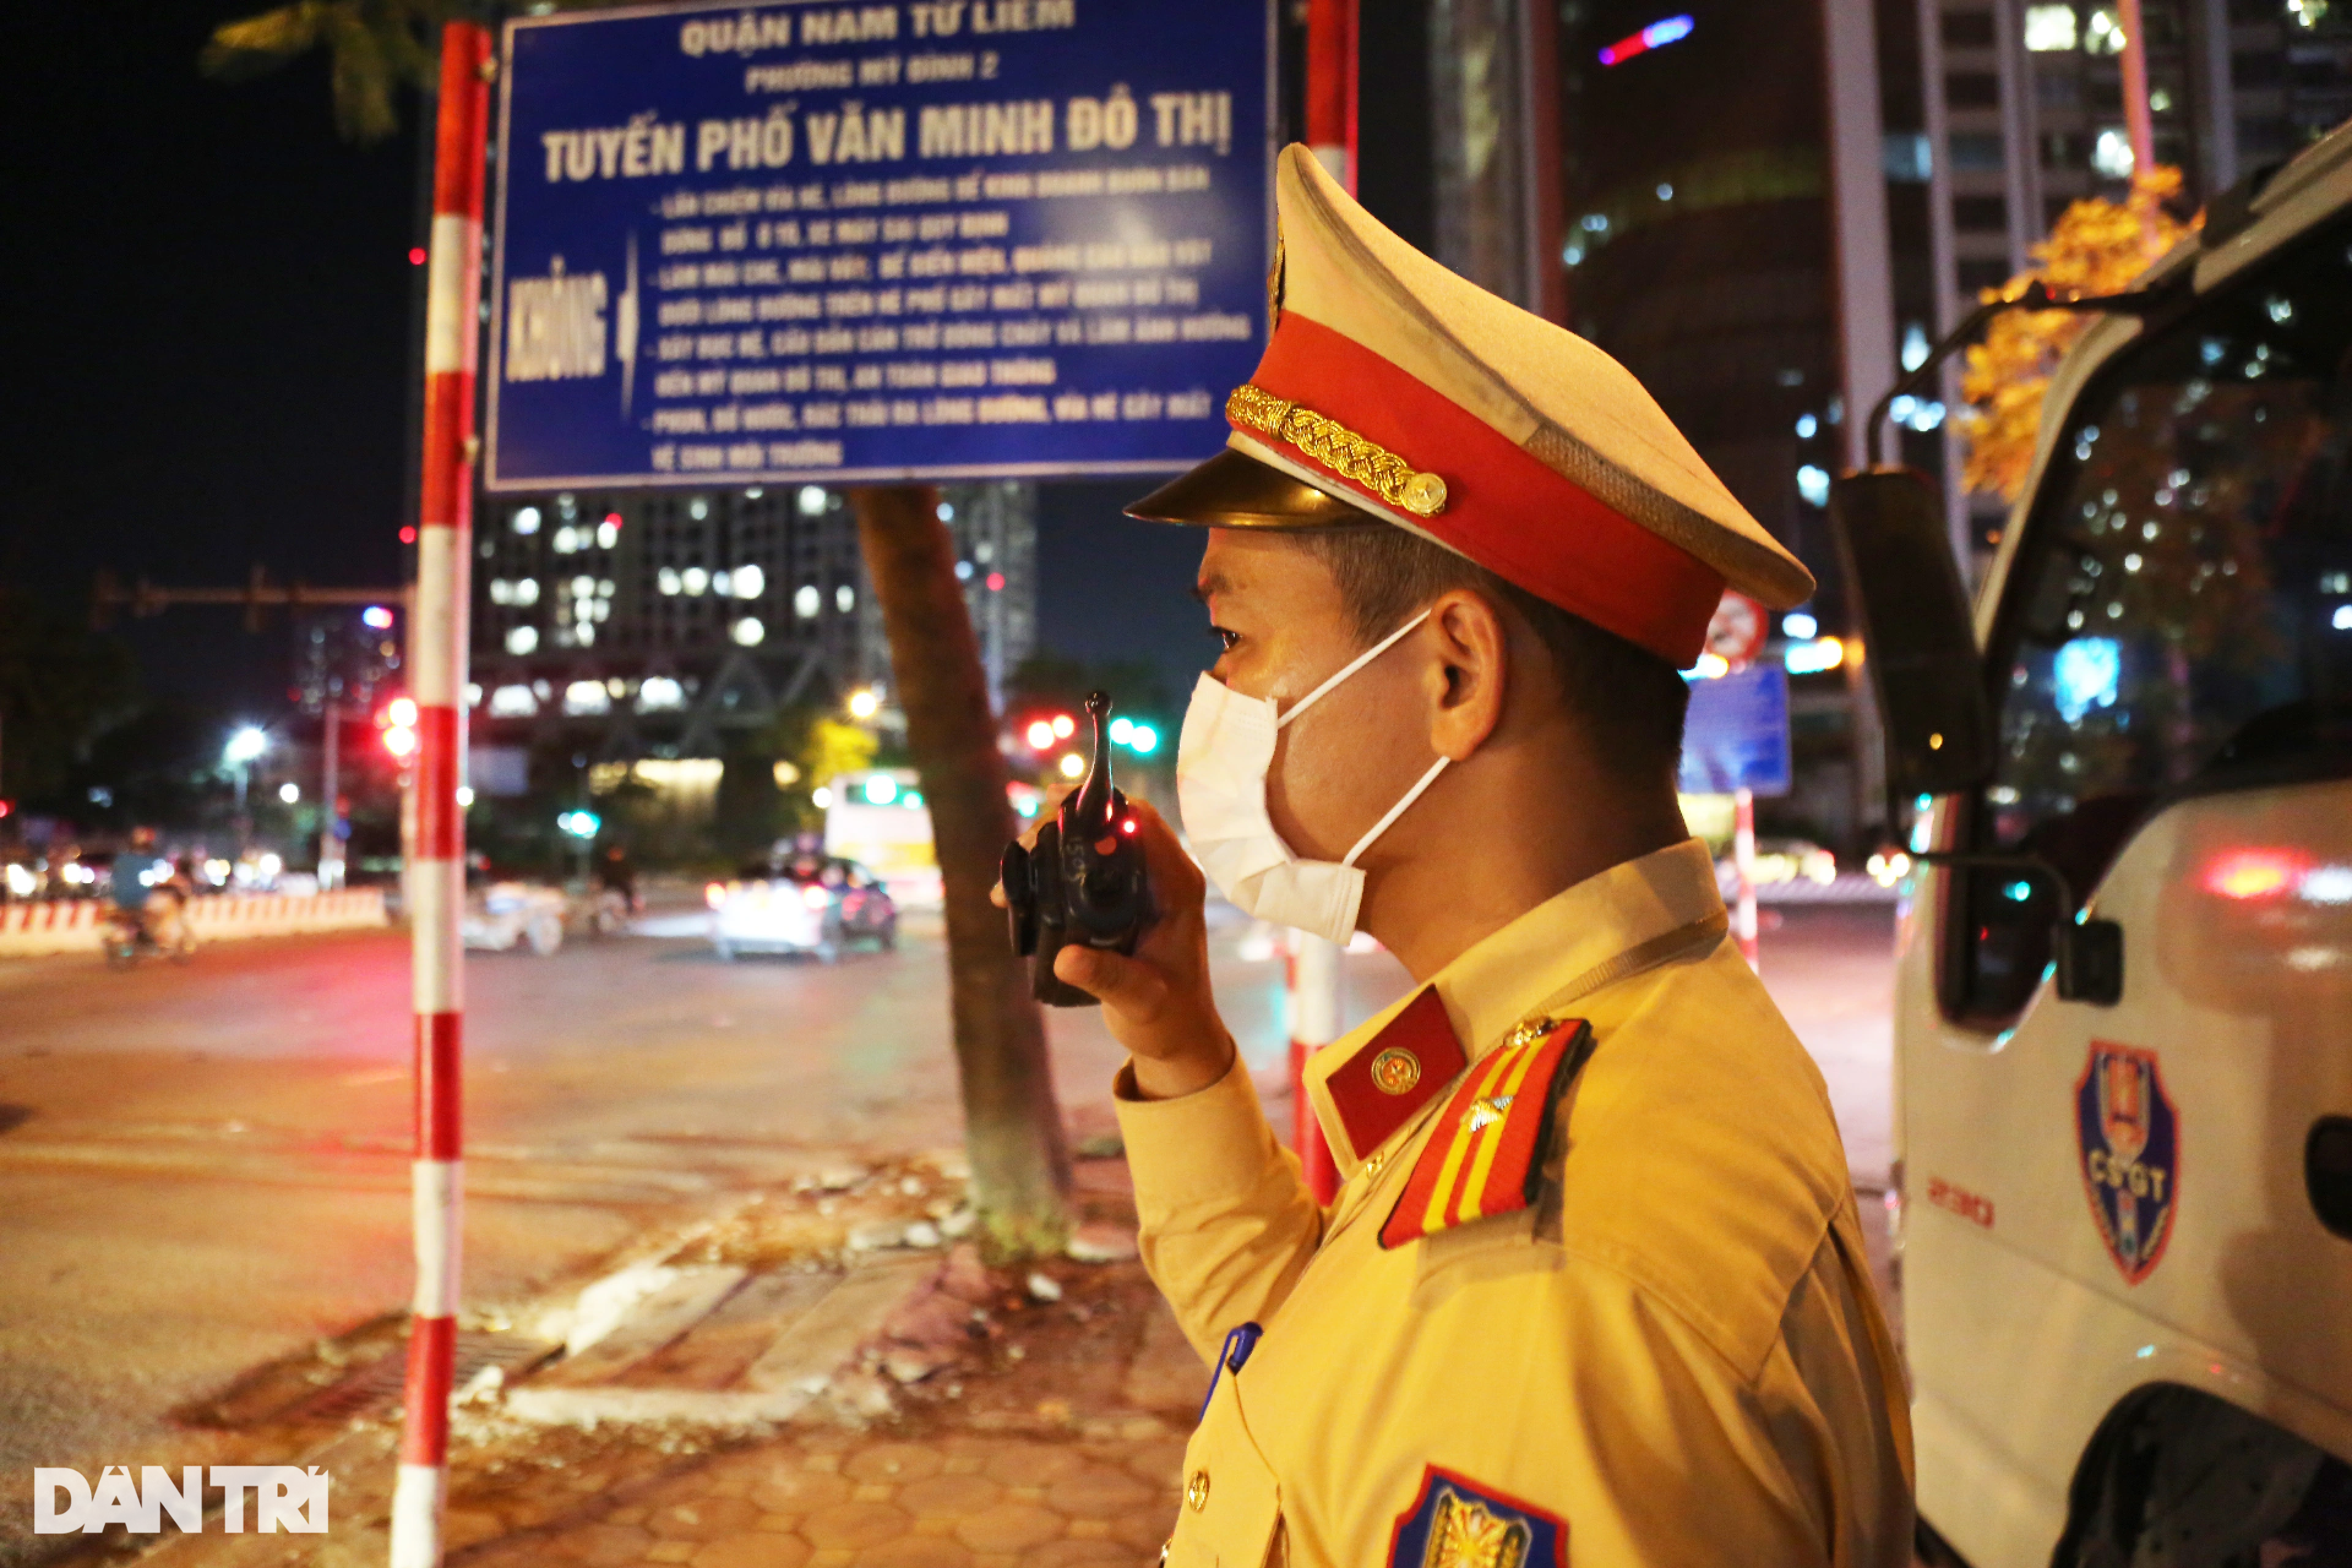 Hà Nội: CSGT hóa trang gần quán nhậu, xử lý ma men lái ô tô - 2